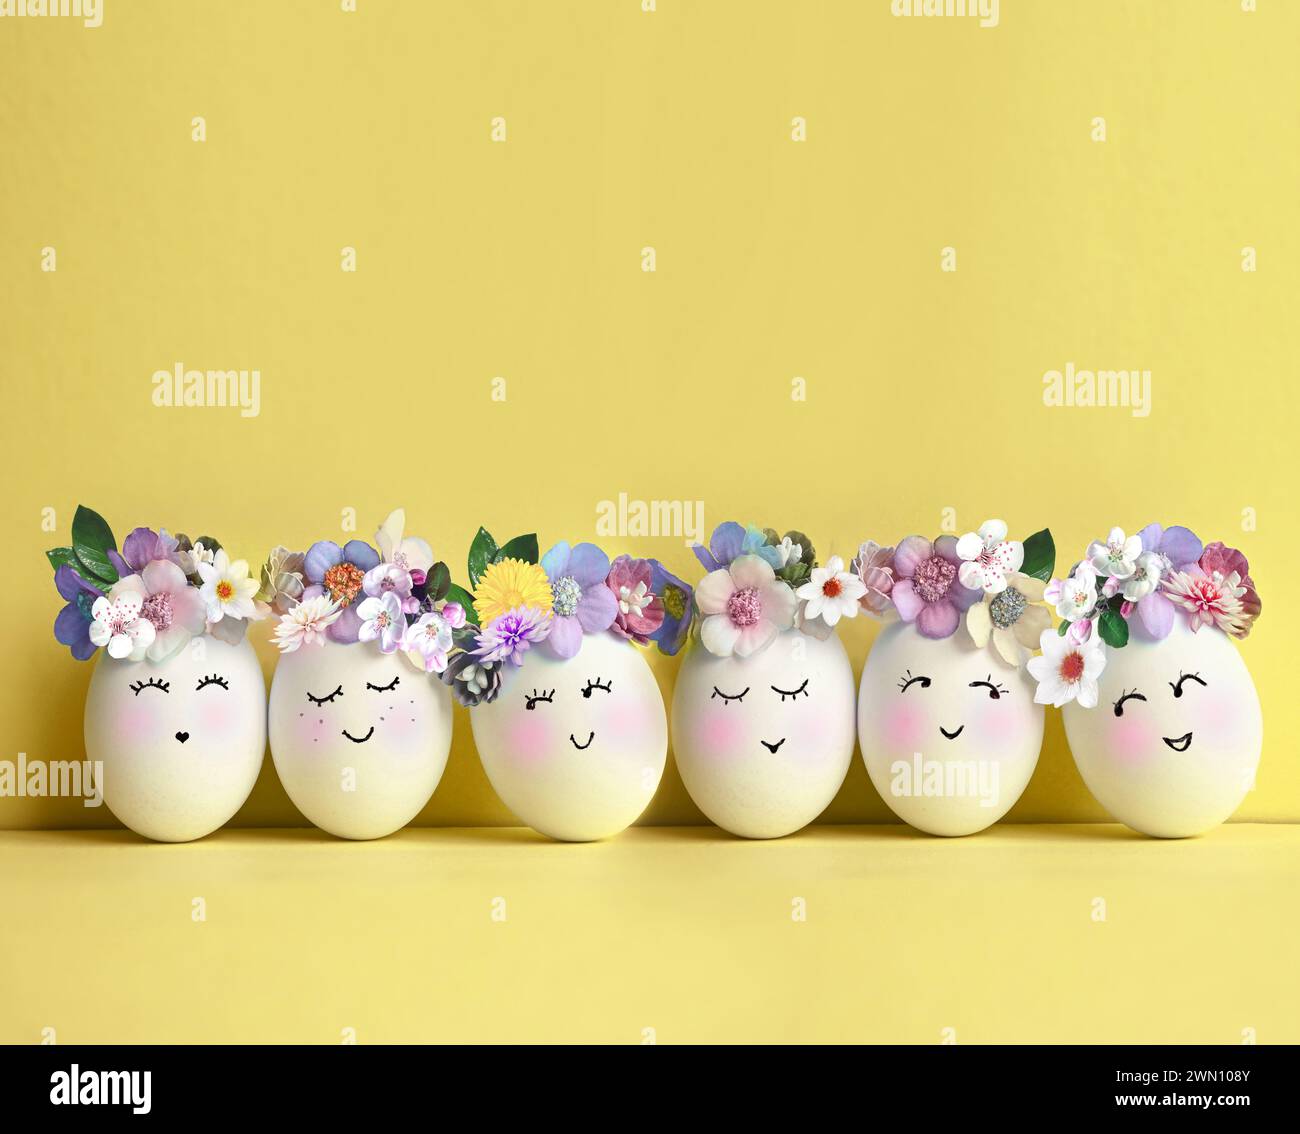 Collection d'oeufs de couleurs élégantes avec des fleurs pour la célébration de Pâques sur fond jaune. Concept de vacances. Banque D'Images